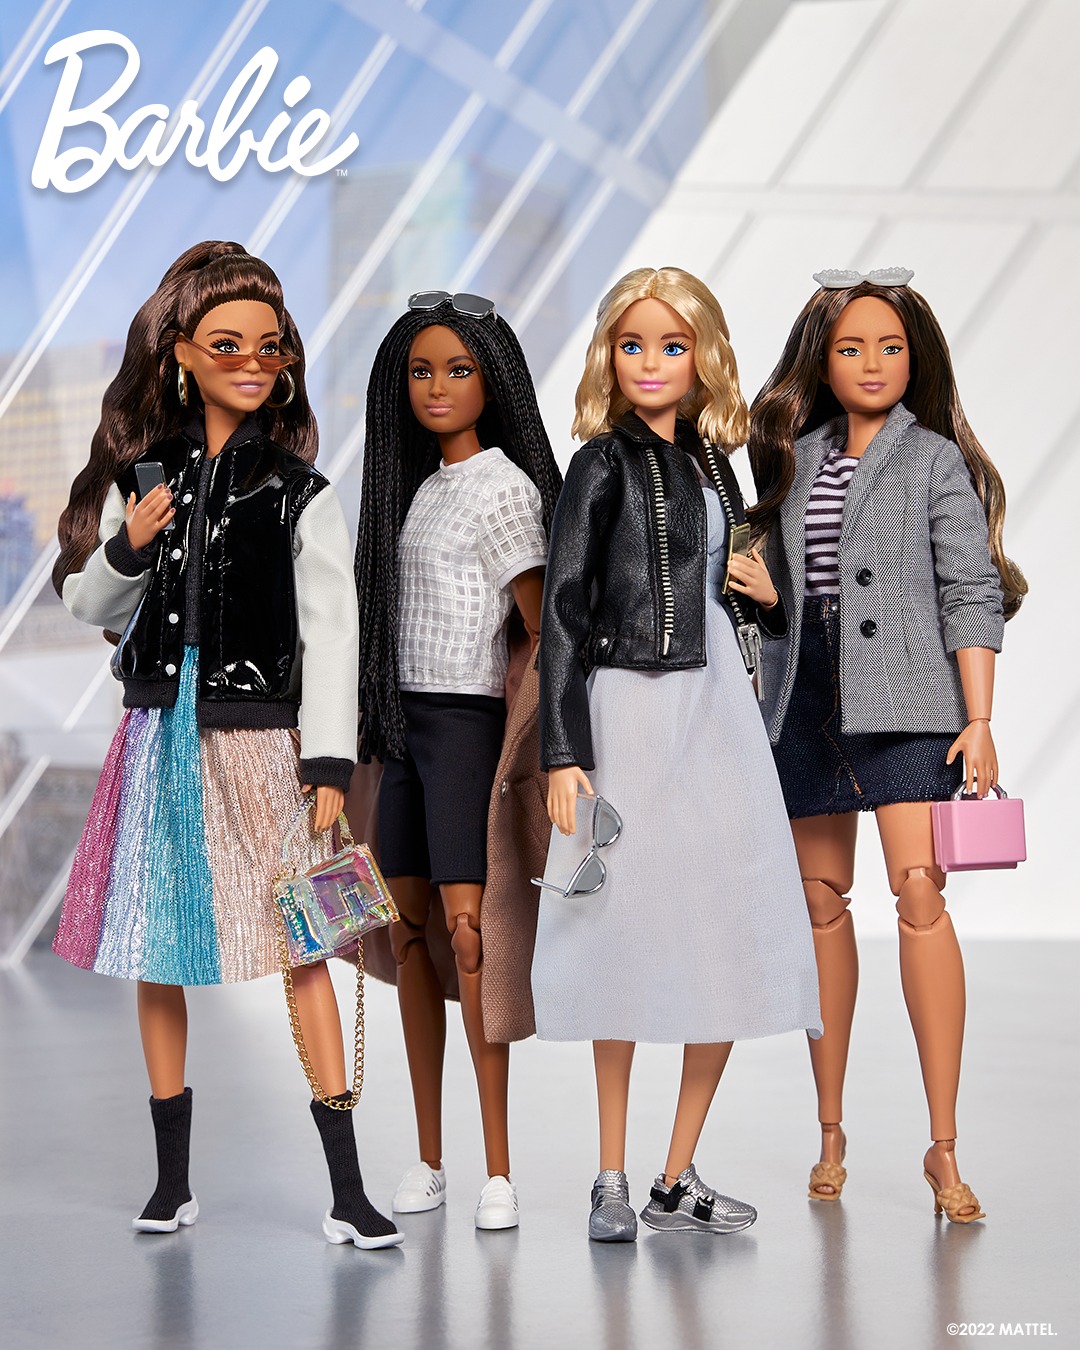 Perchas barbie gris lote de 3 nuevo muñeca complementos regalo colección moda 